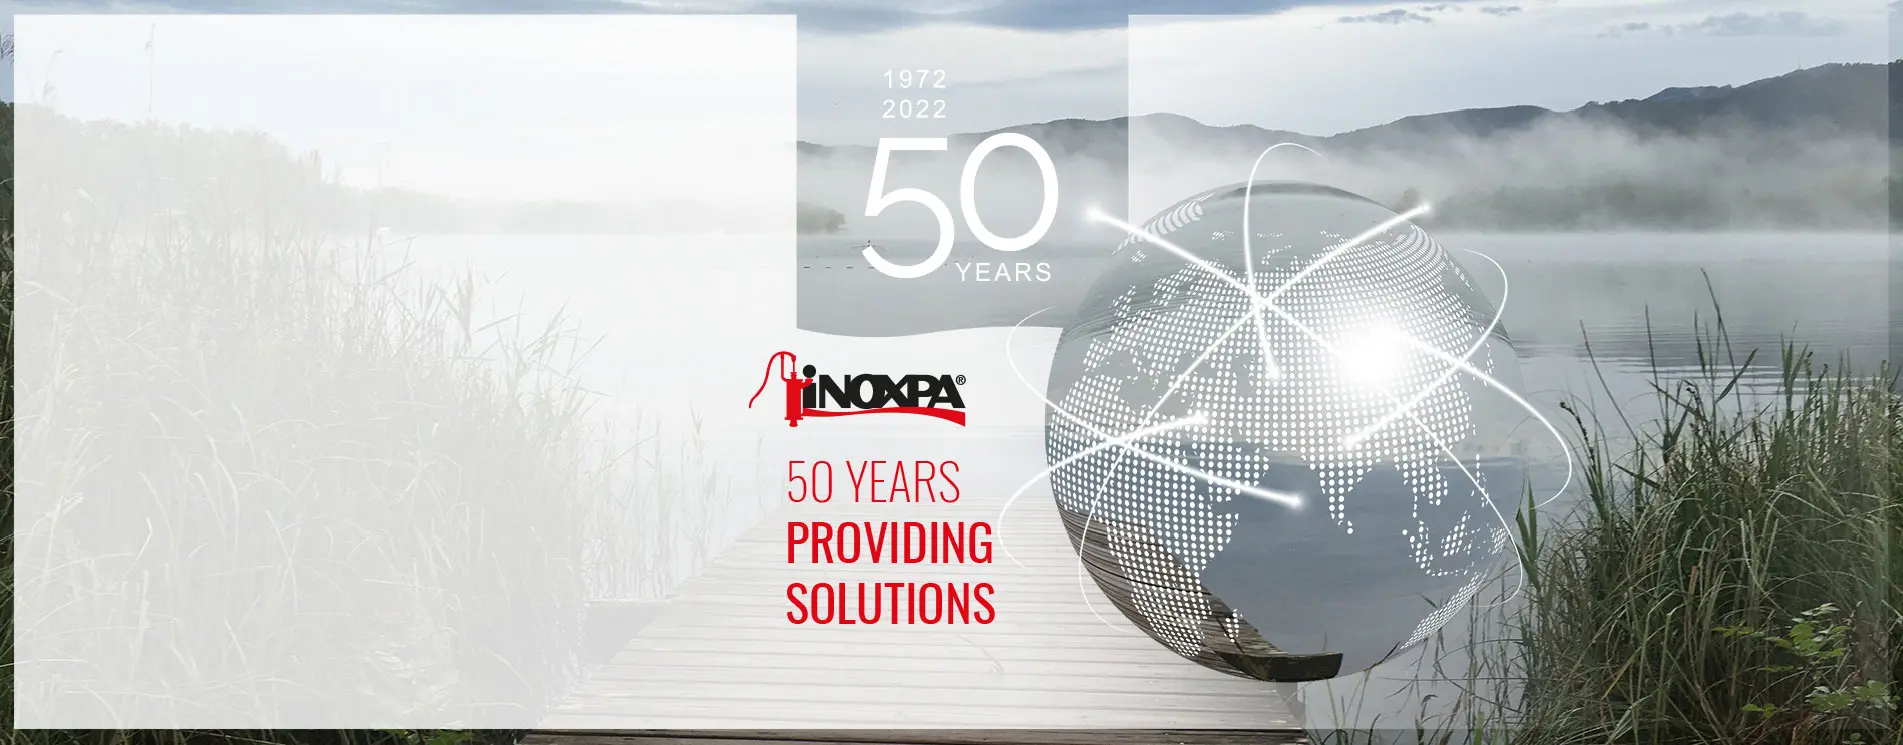 50 YEARS OF INOXPA